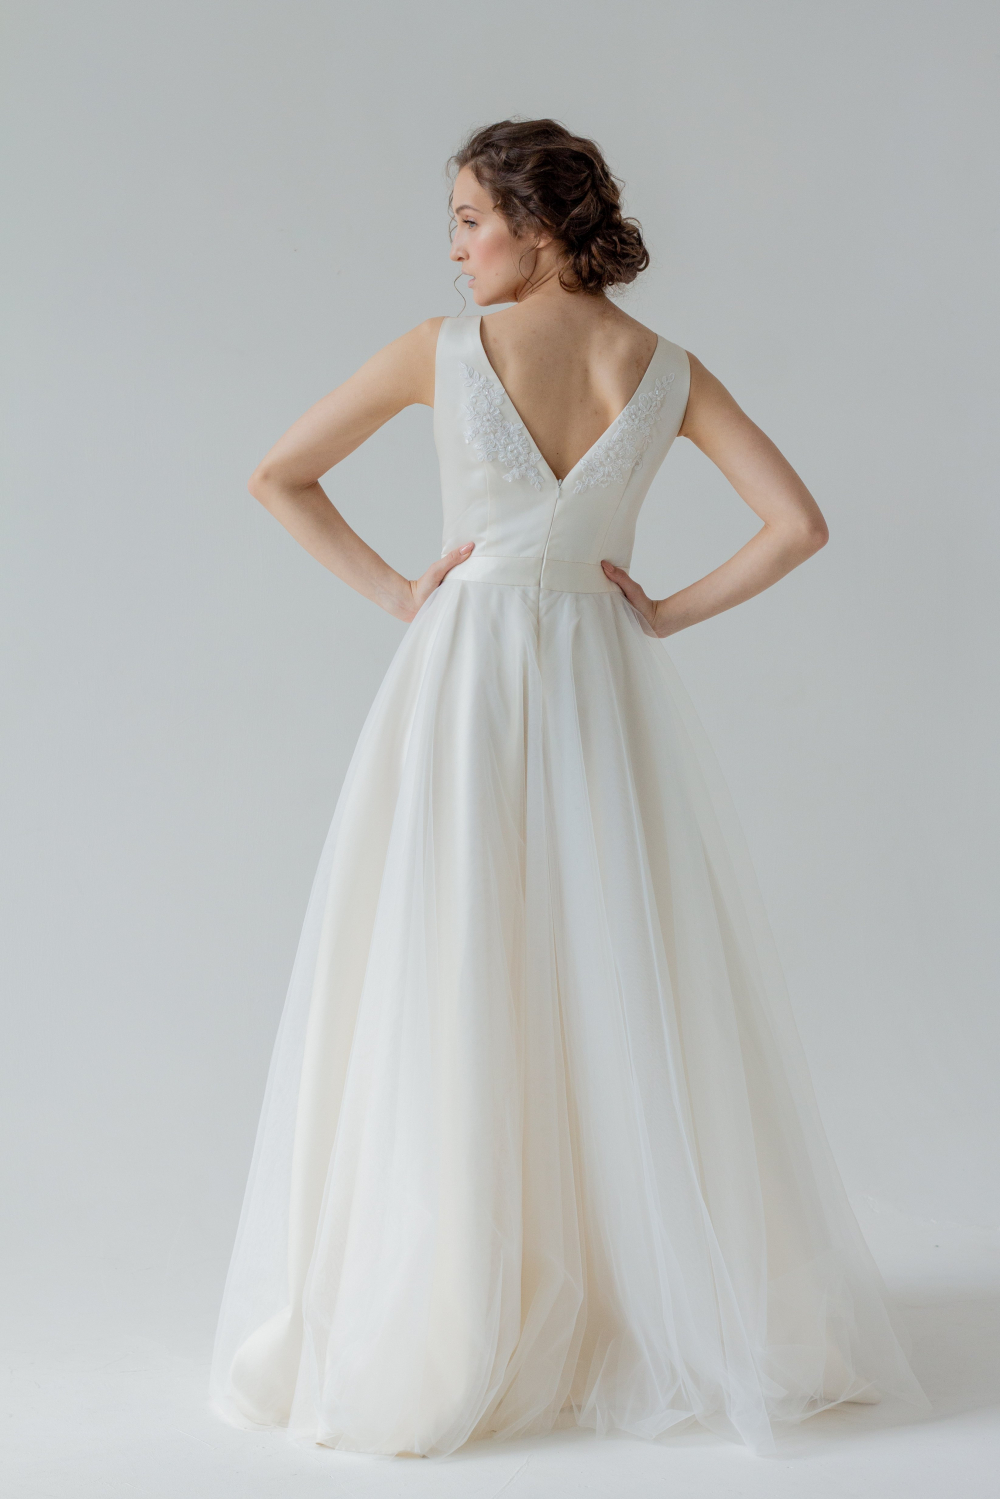 Красивого молочного оттенка  свадебное платье "Анна", с красивой спиной.
Размер 44.